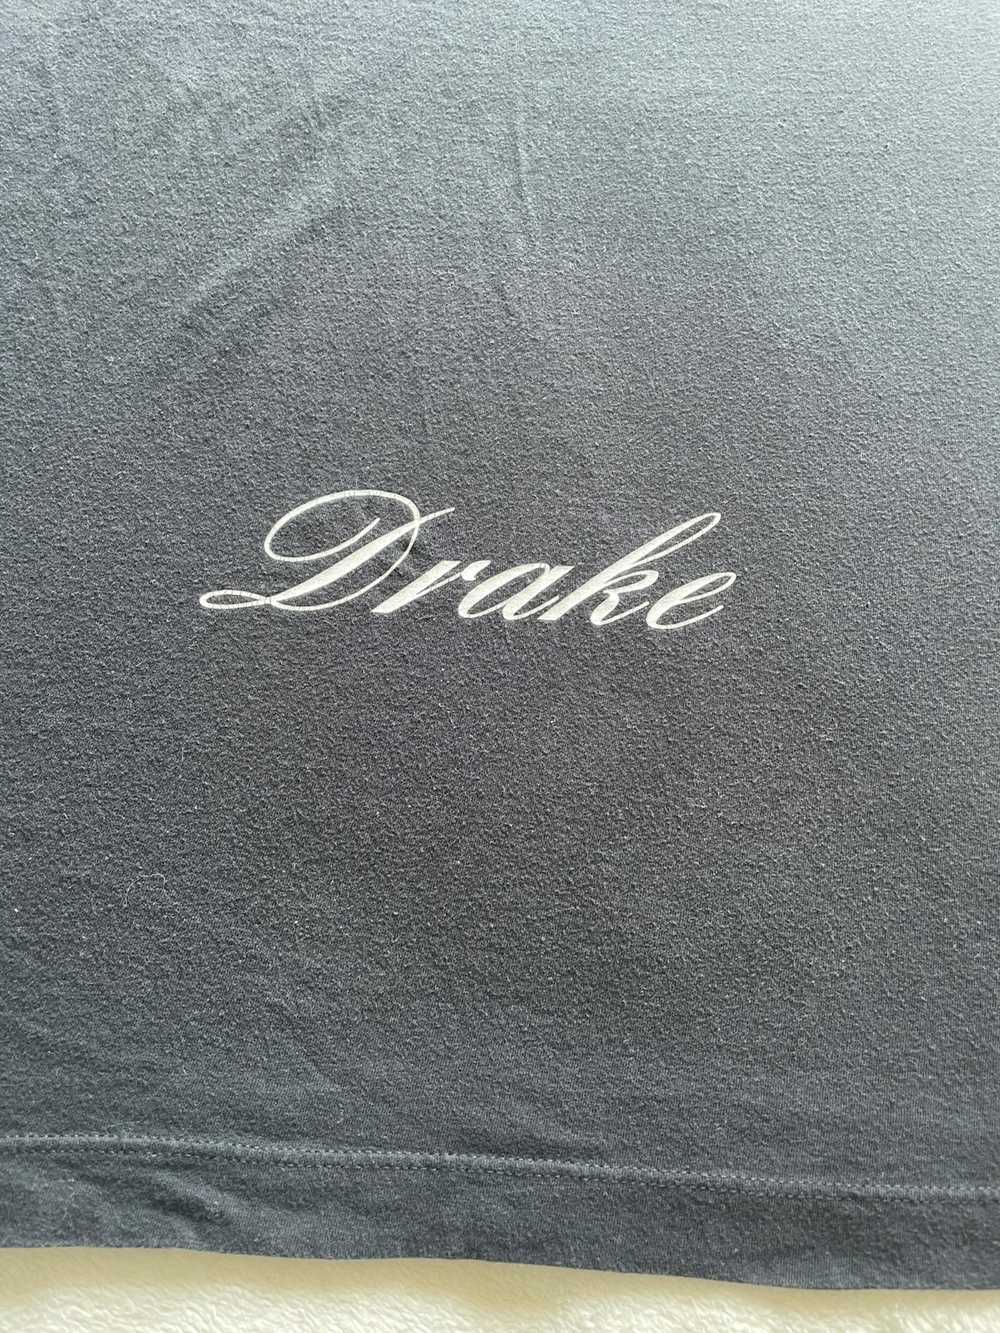 Drake × Nike Drake x Nike CLB Shirt - image 5